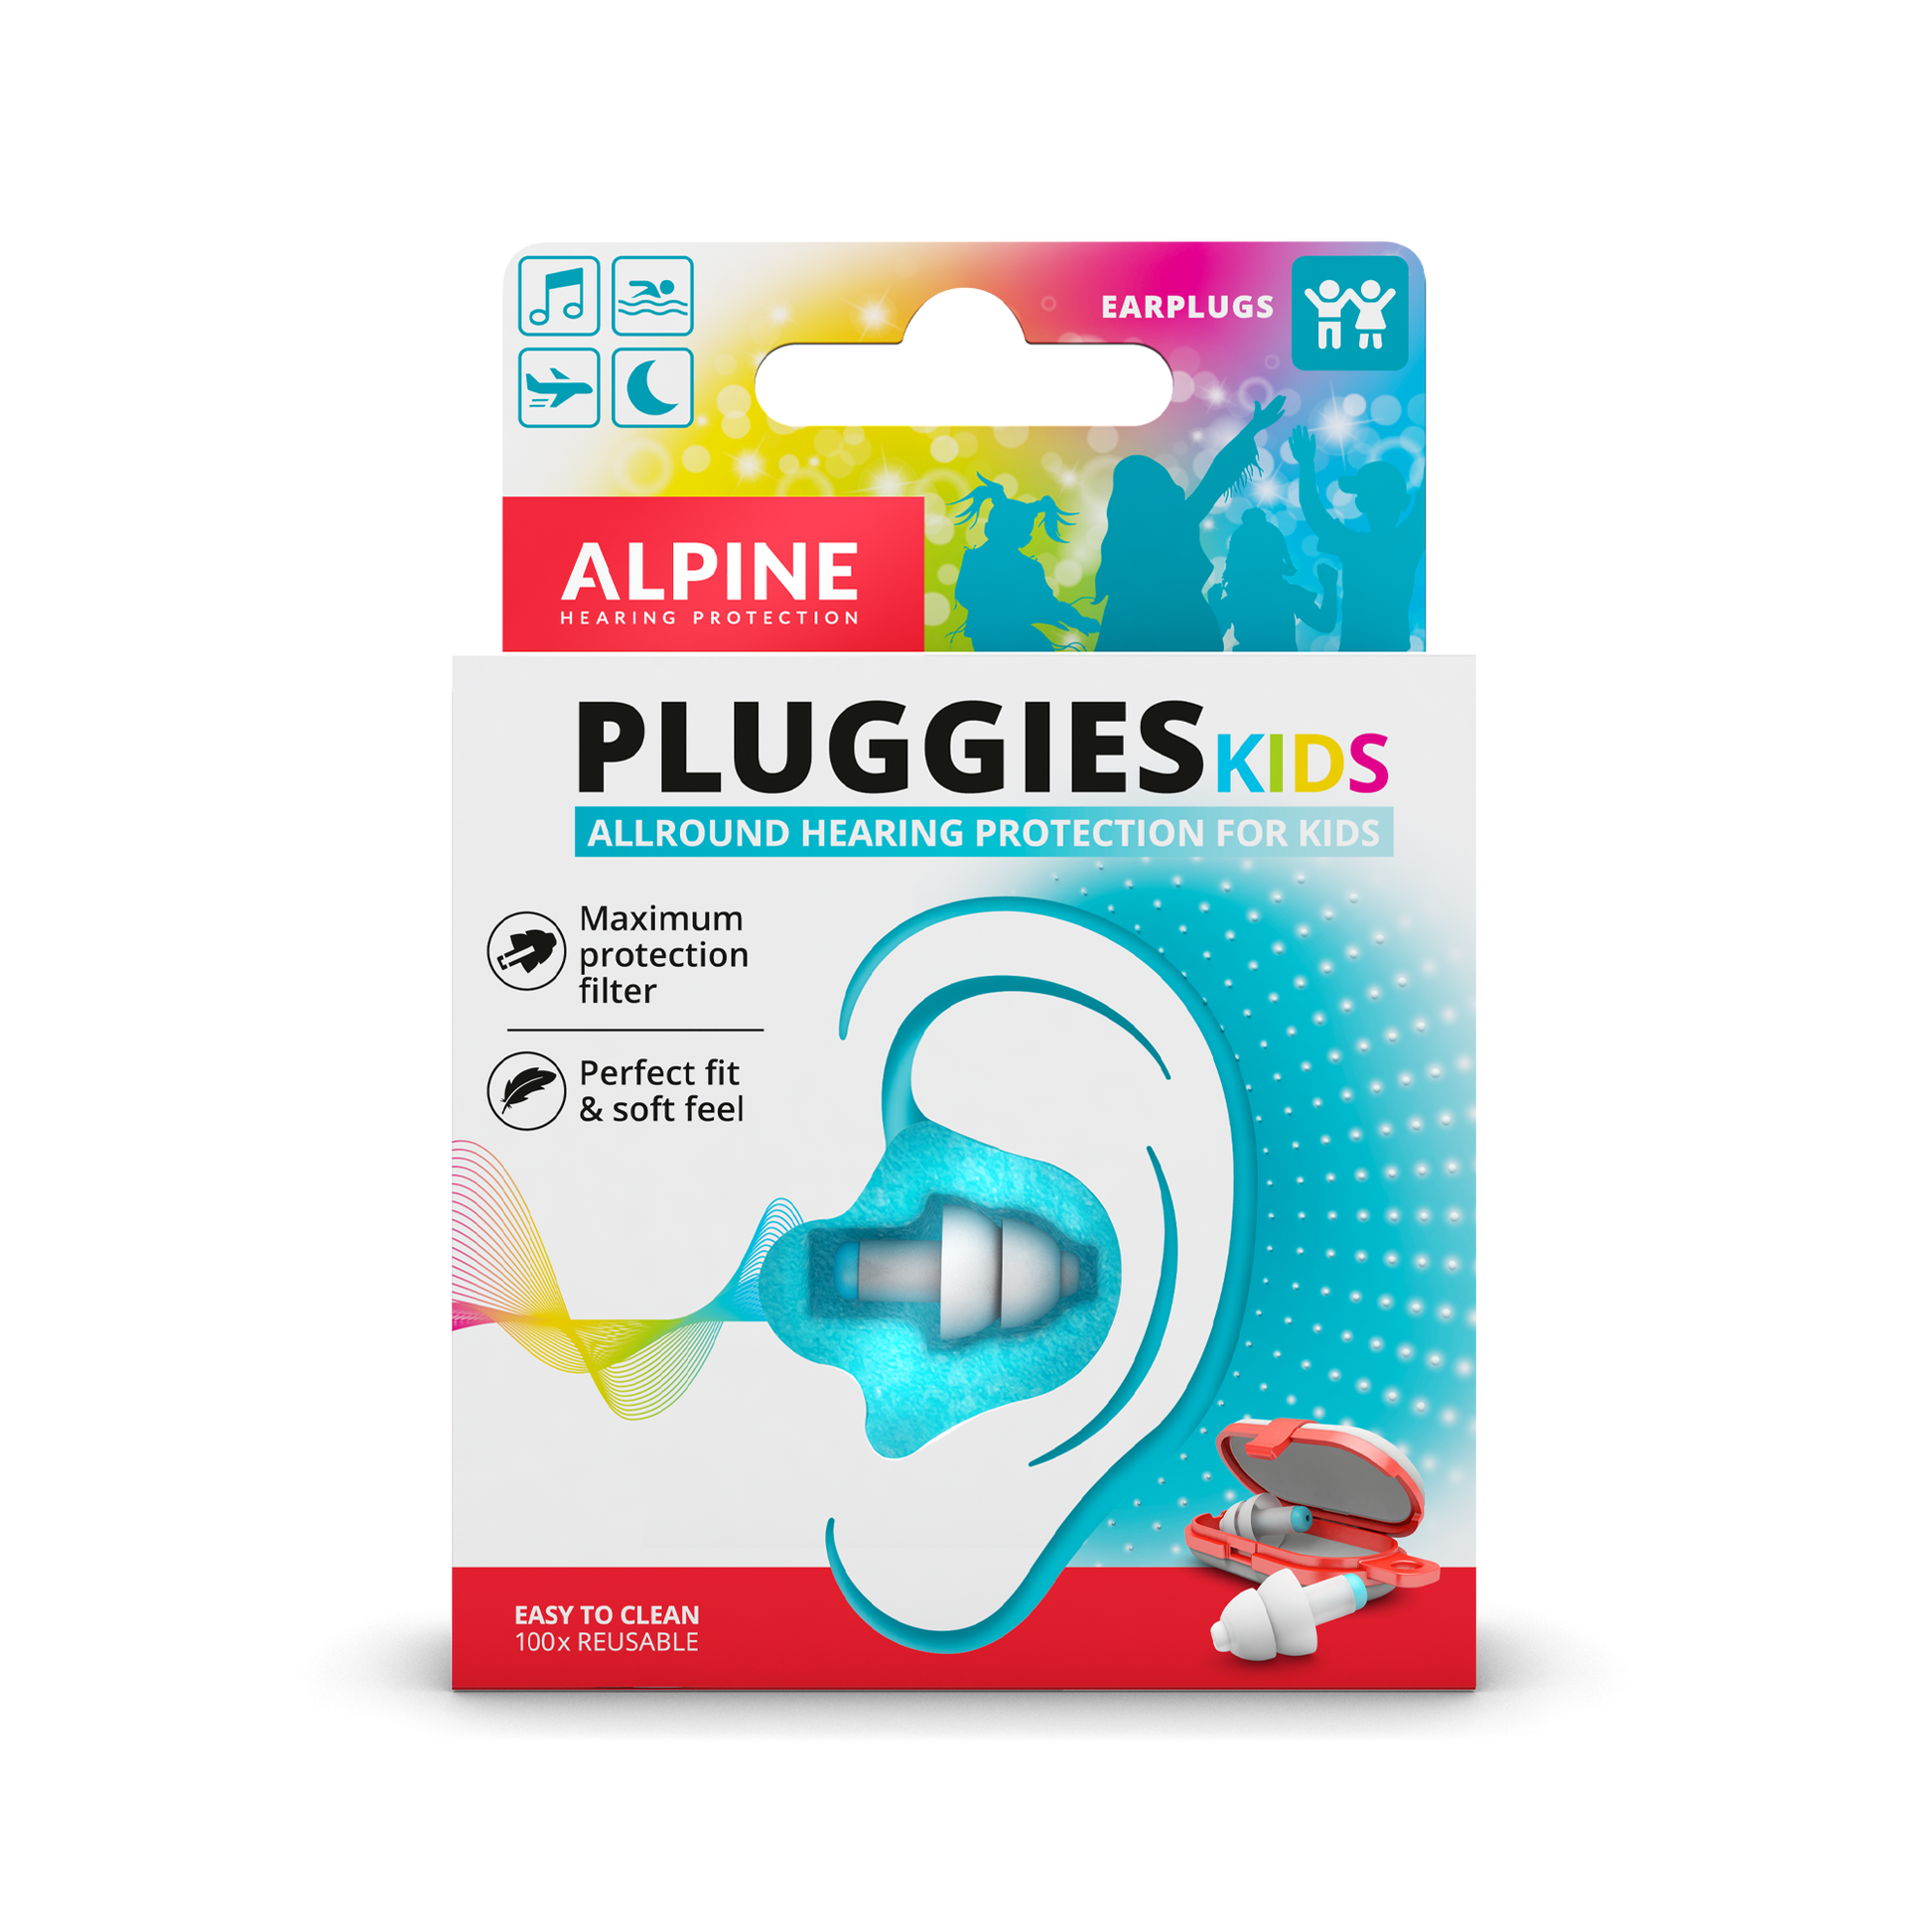 Alpine Pluggies Kids beschermt de oren tegen hard geluid en gehoorbeschadiging